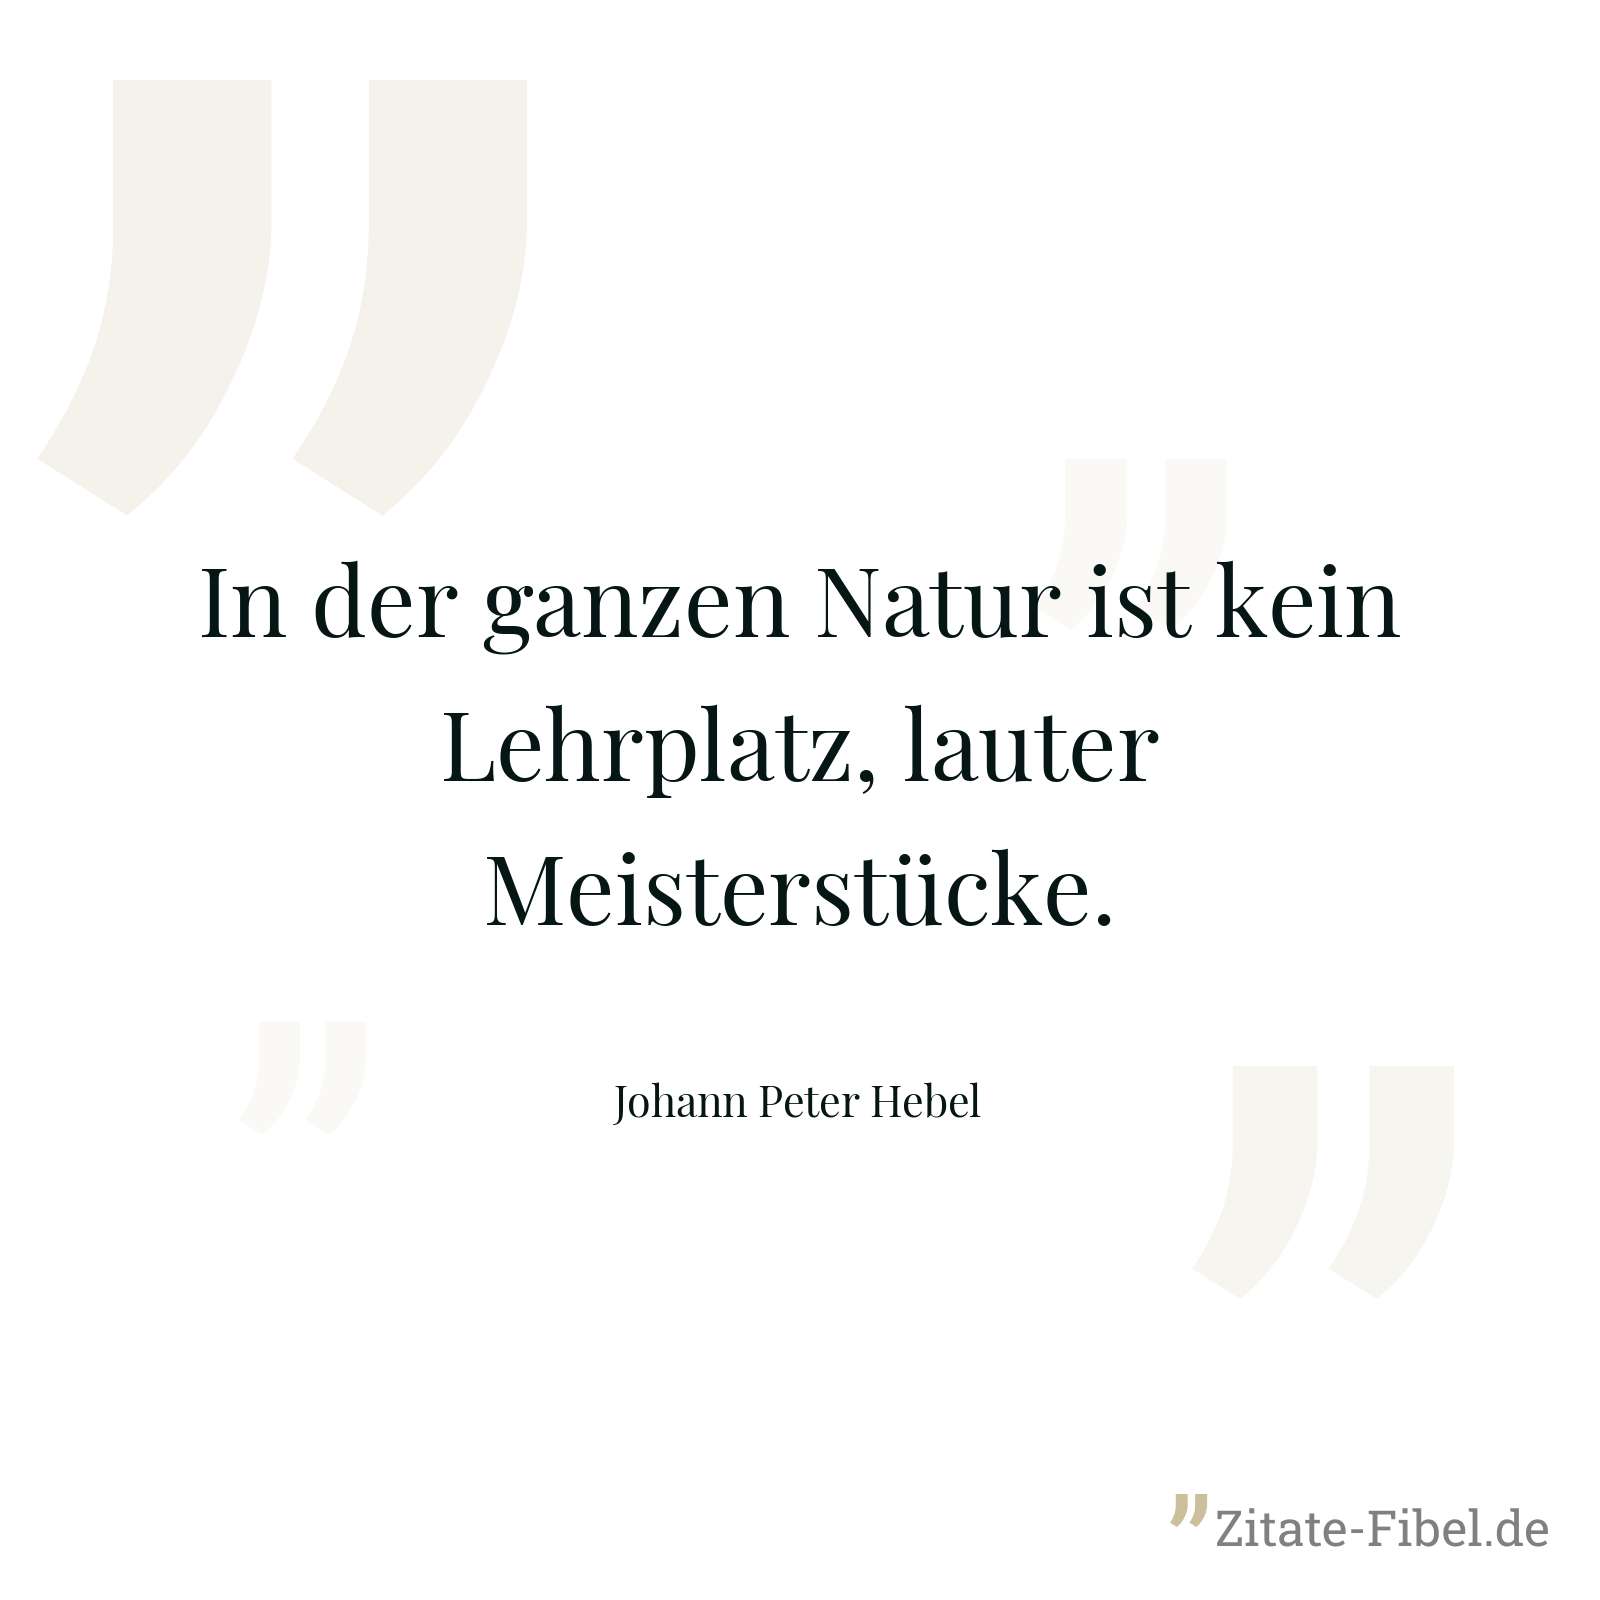 In der ganzen Natur ist kein Lehrplatz, lauter Meisterstücke. - Johann Peter Hebel